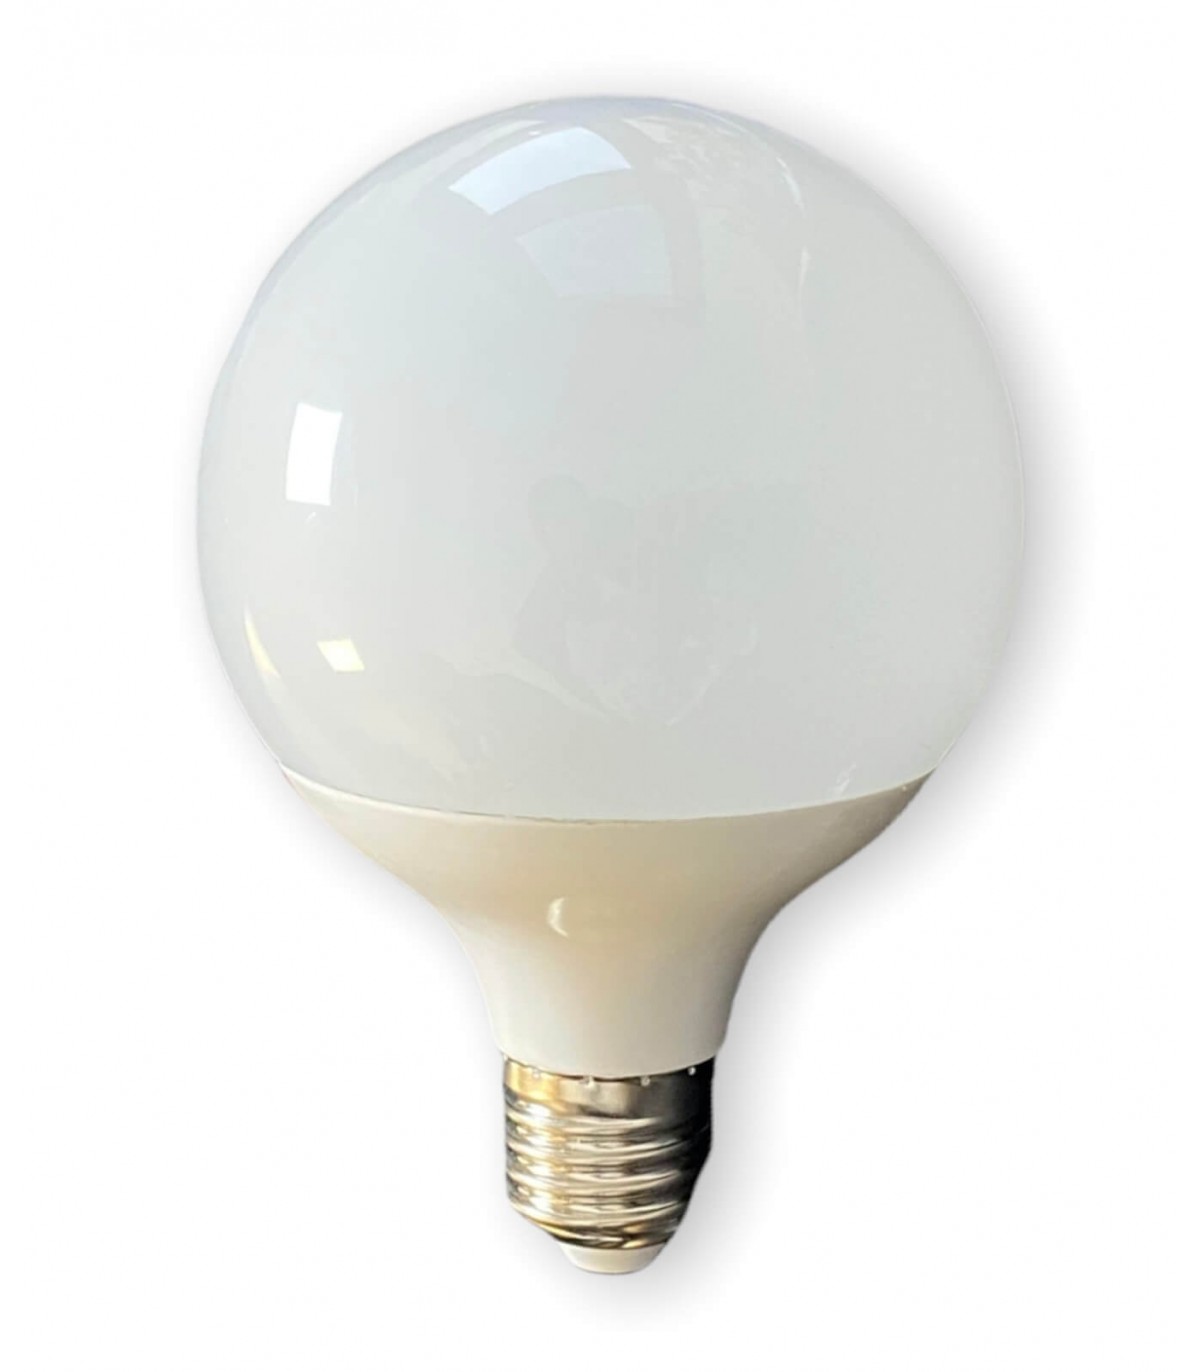 Ampoule LED G95 avec culot standard E27, conso. de 10W